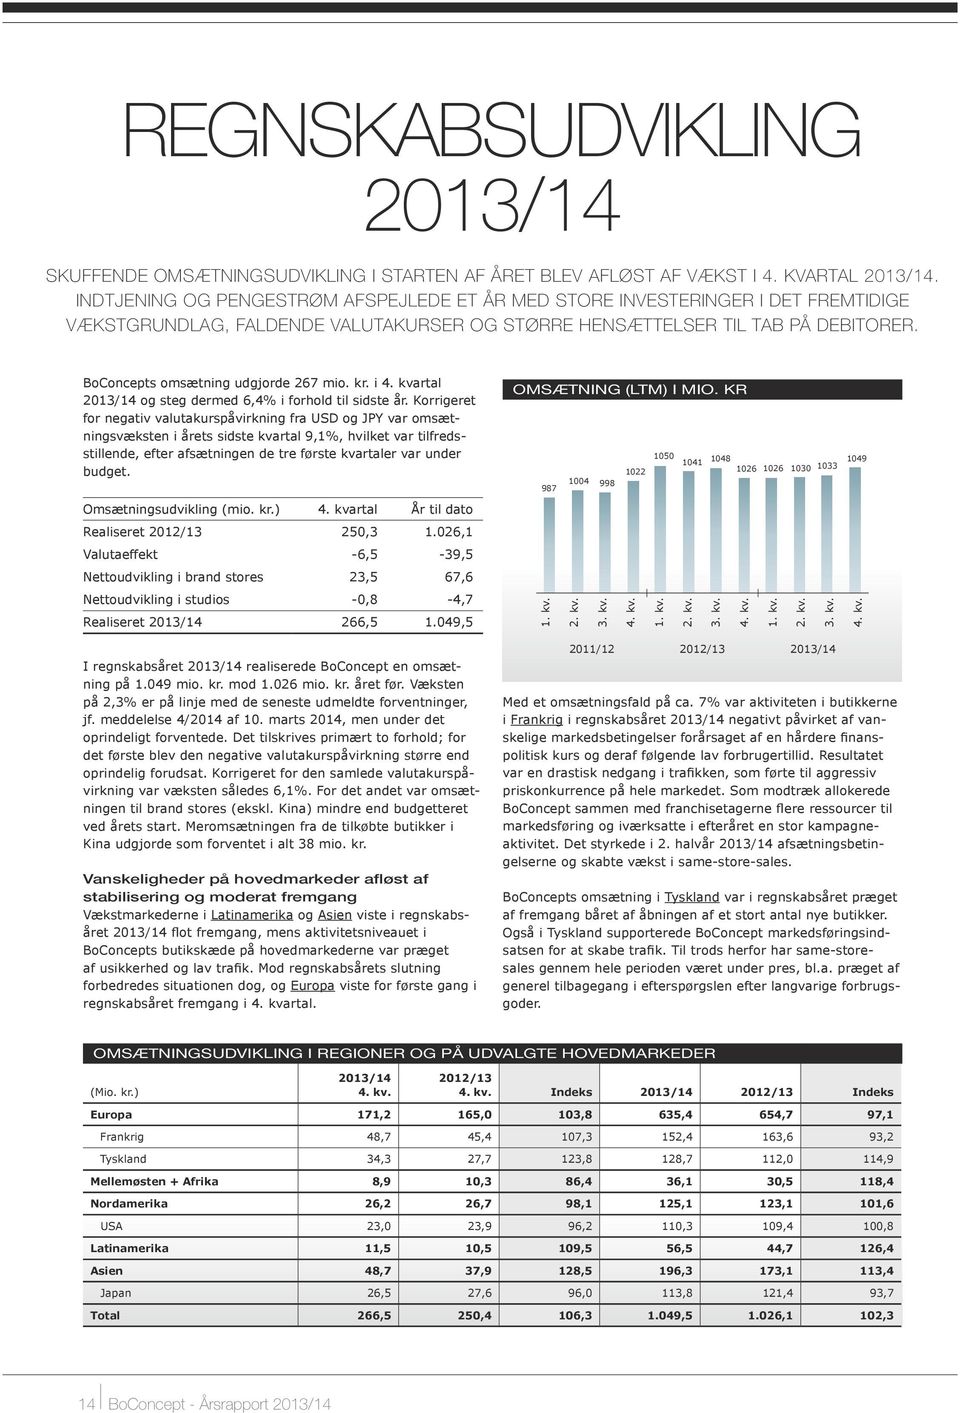 BoConcepts omsætning udgjorde 267 mio. kr. i 4. kvartal 2013/14 og steg dermed 6,4% i forhold til sidste år.